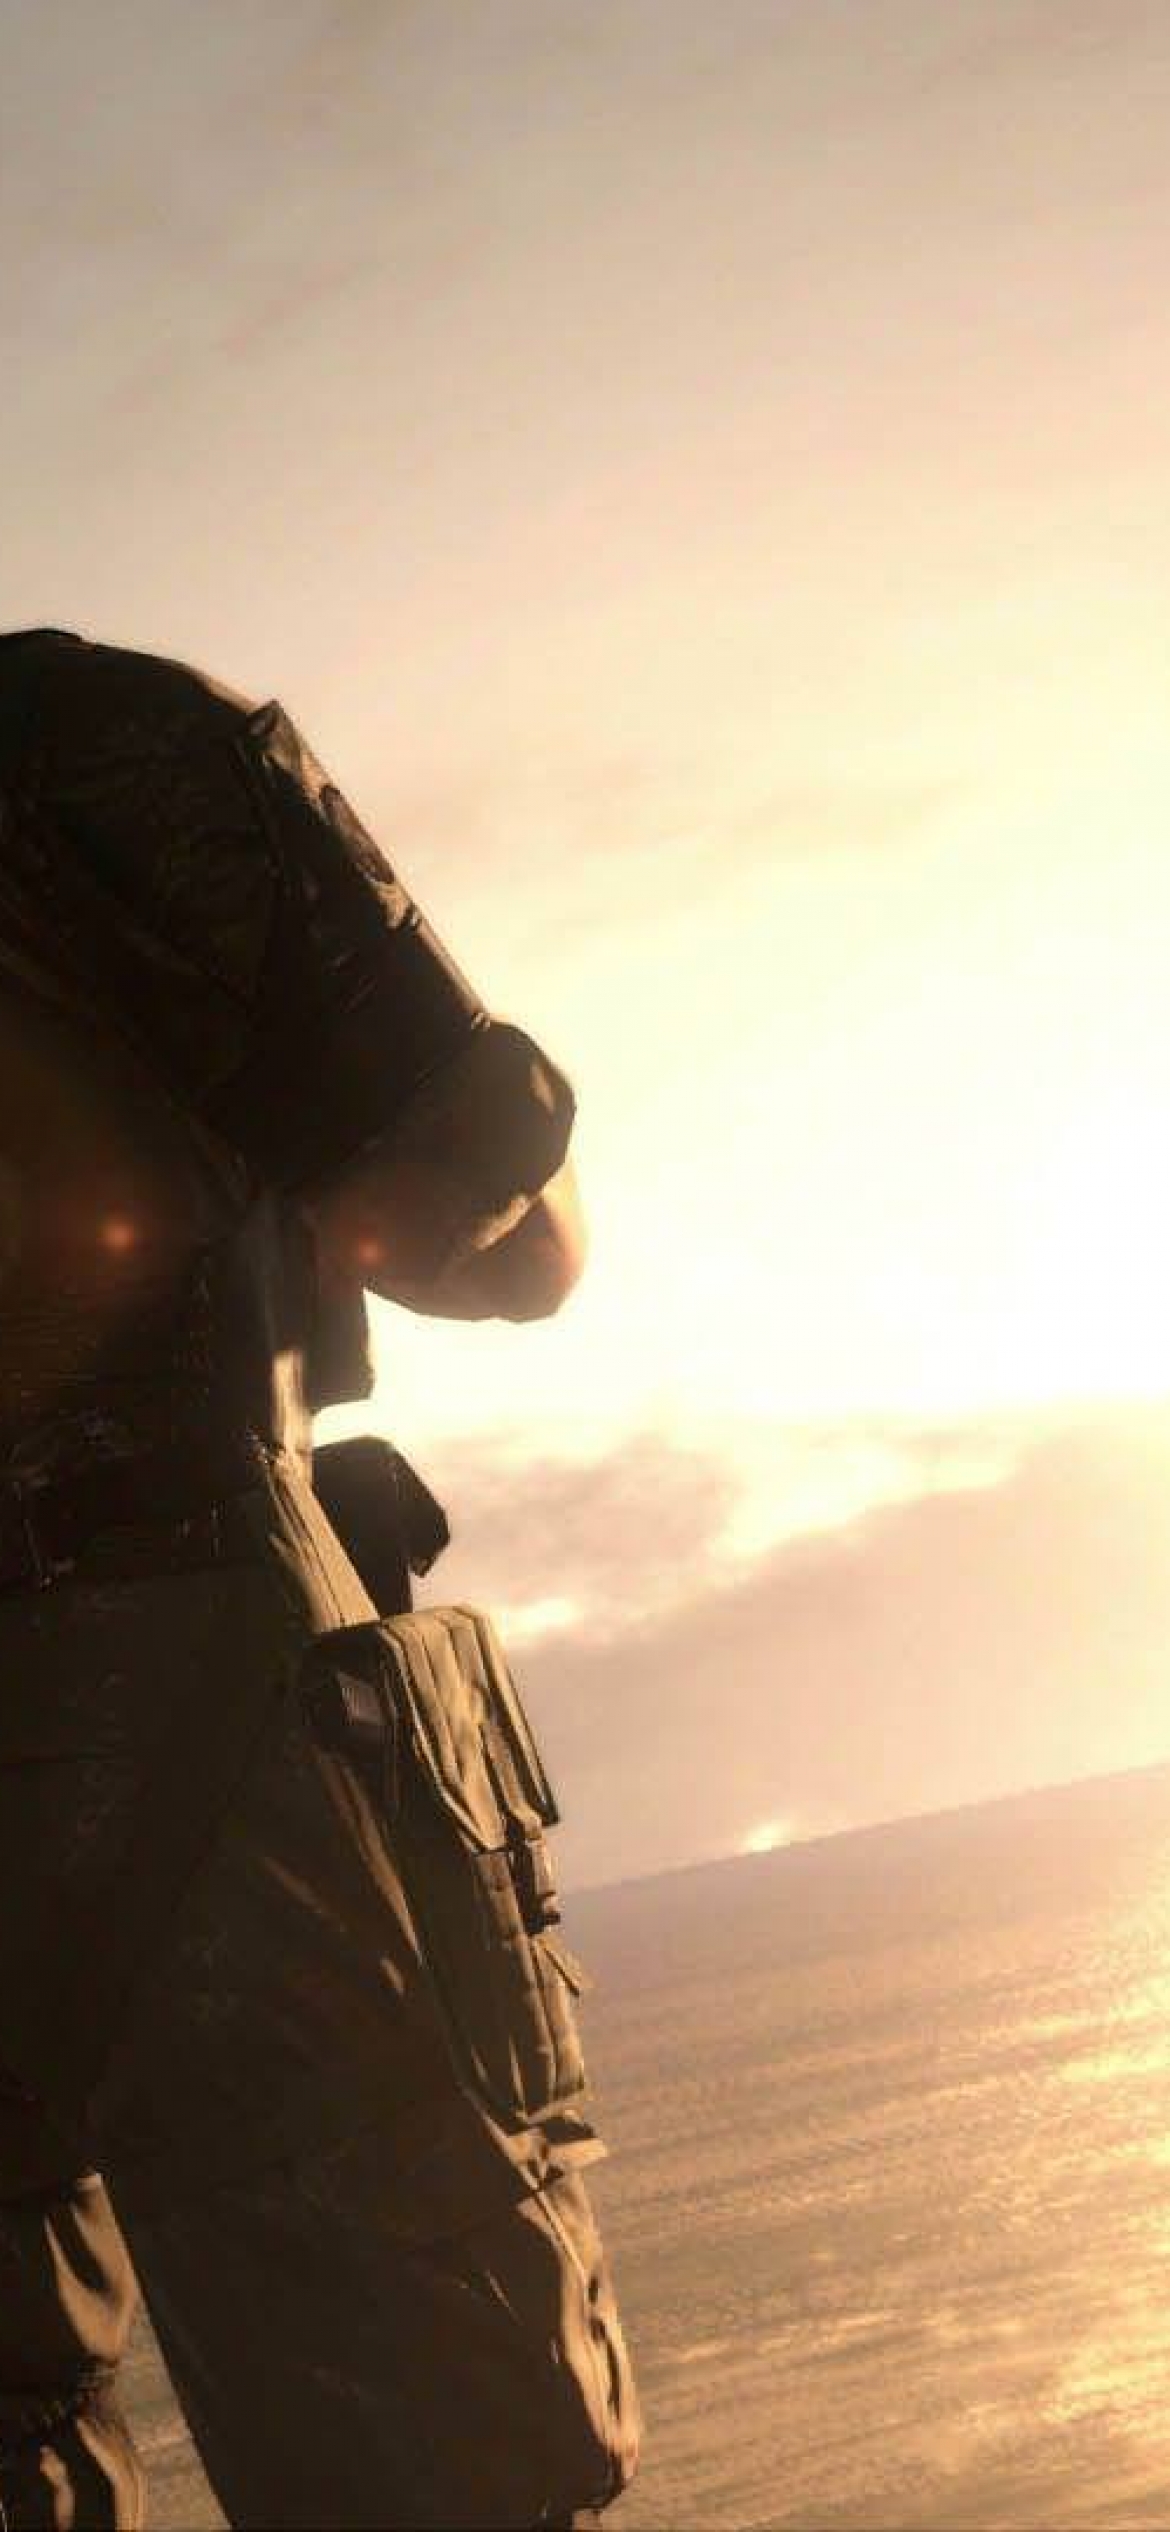 Download Metal Gear 4K's Main Characters Wallpaper